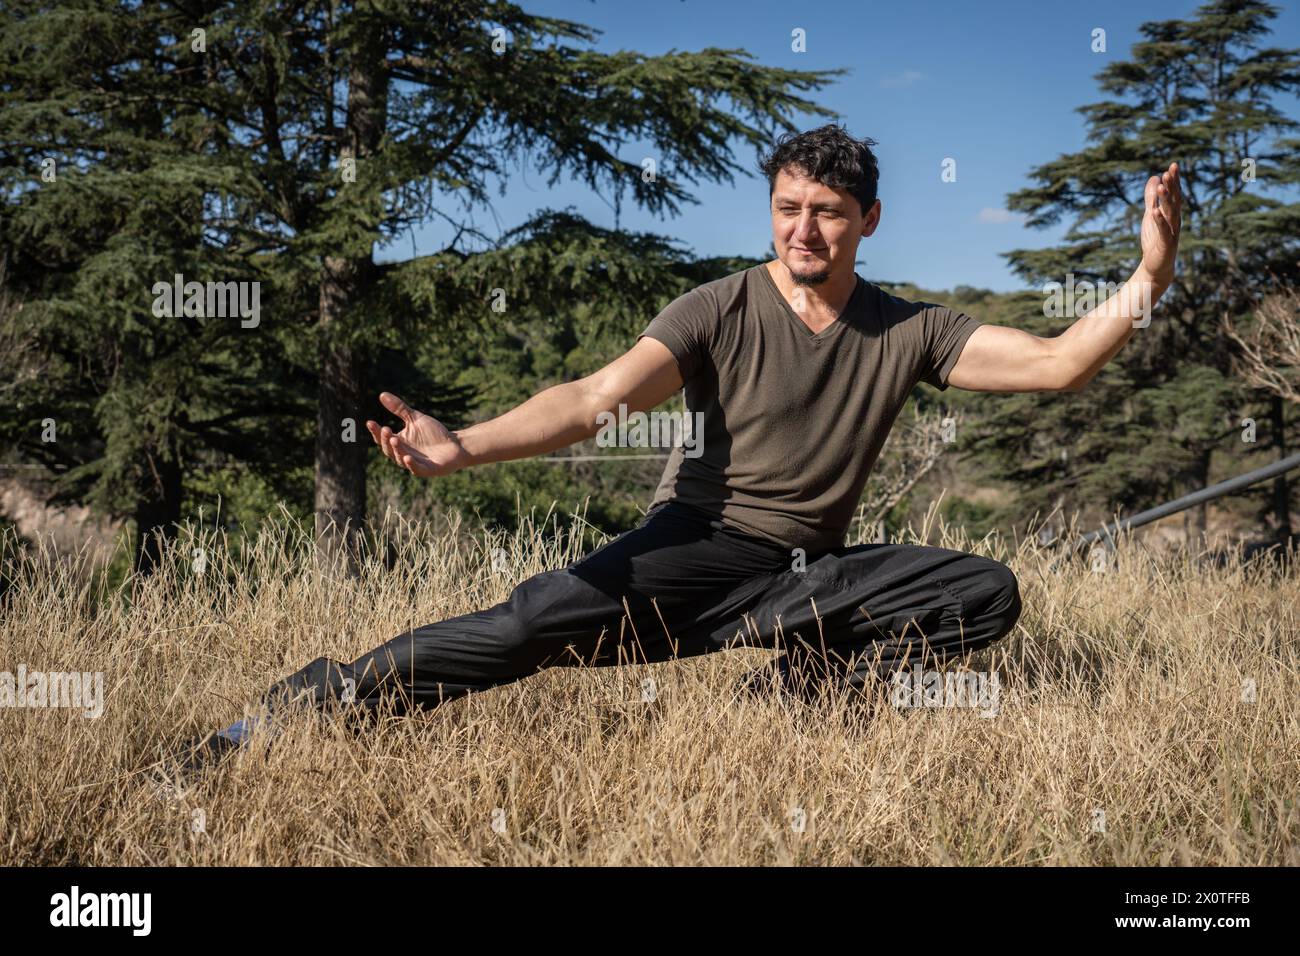 Un homme mature pratique le Kung Fu dans un parc naturel, concentré et engagé dans son entraînement physique et mental Banque D'Images